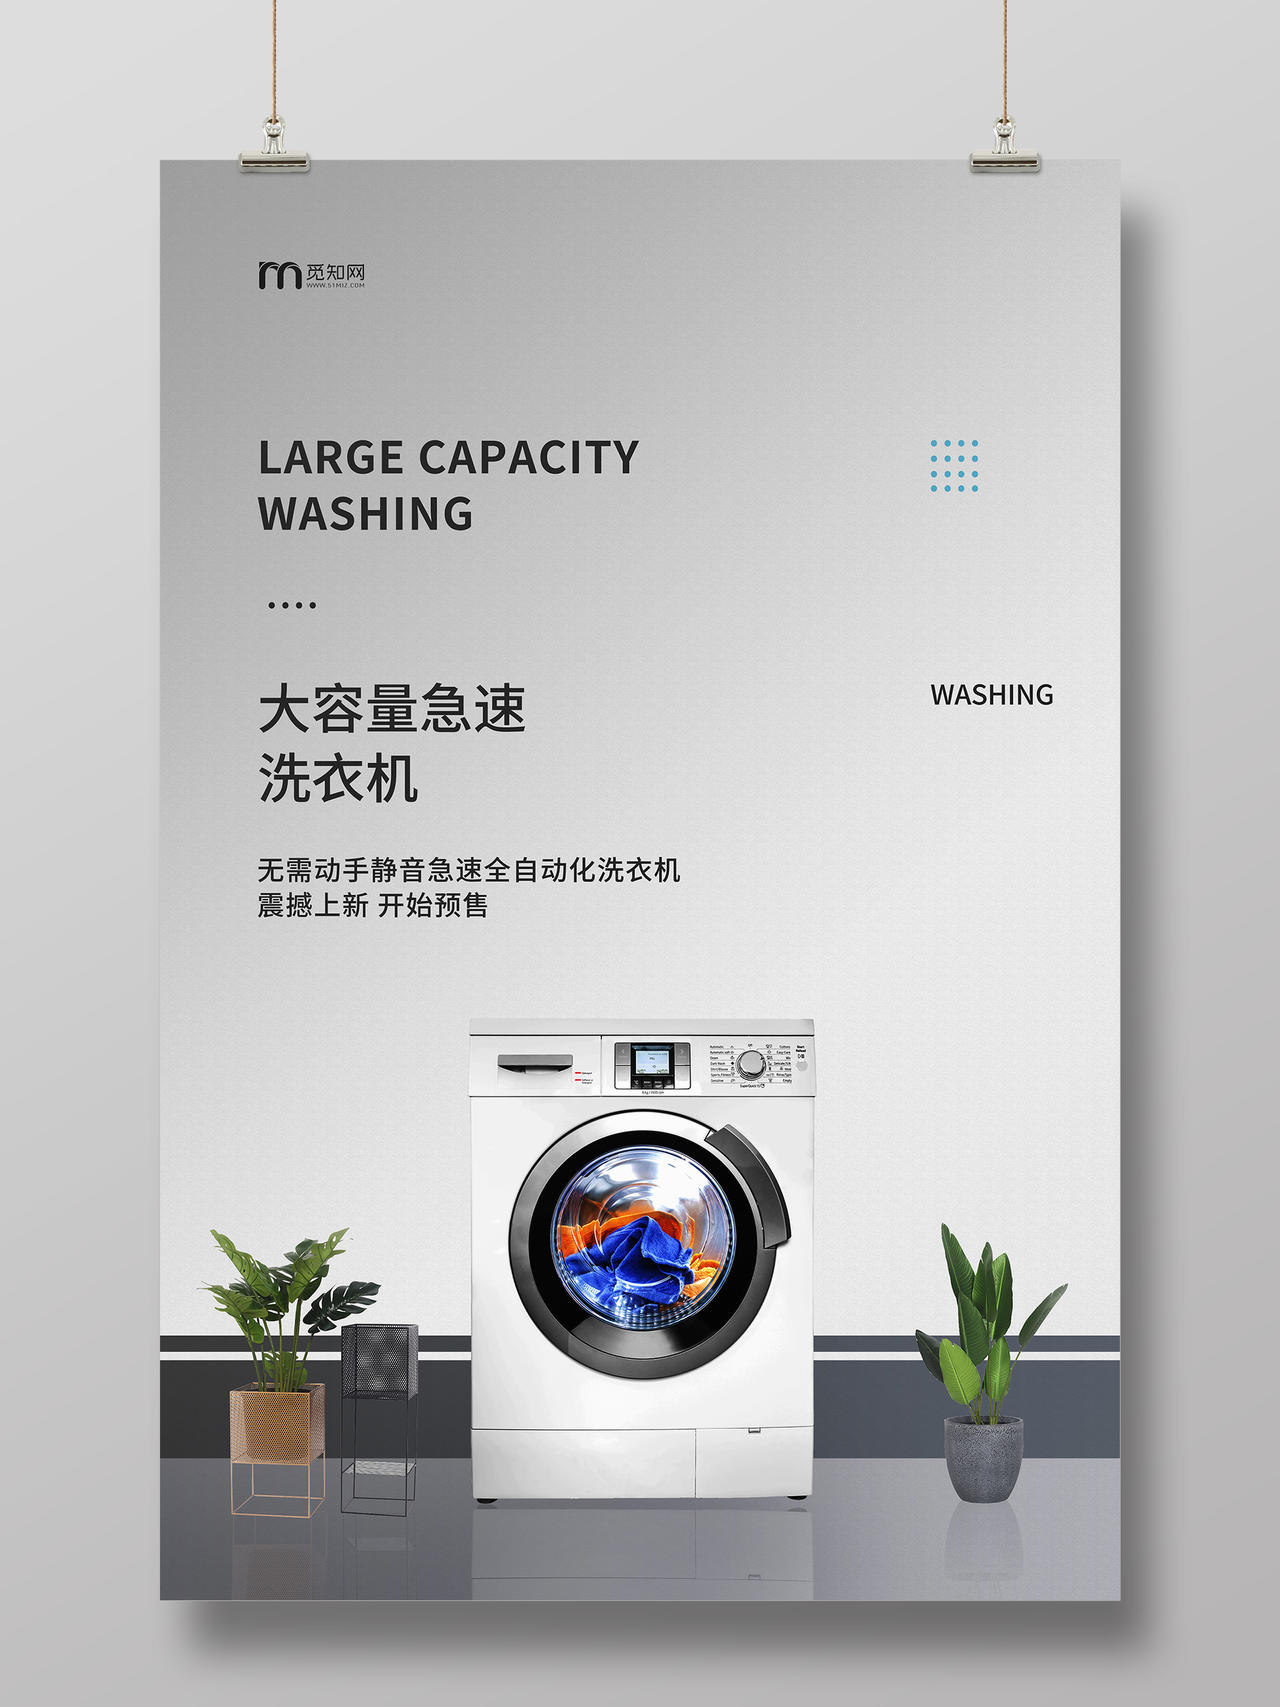 白色渐变小清新家用电器大容量急速洗衣机电器宣传海报电器海报